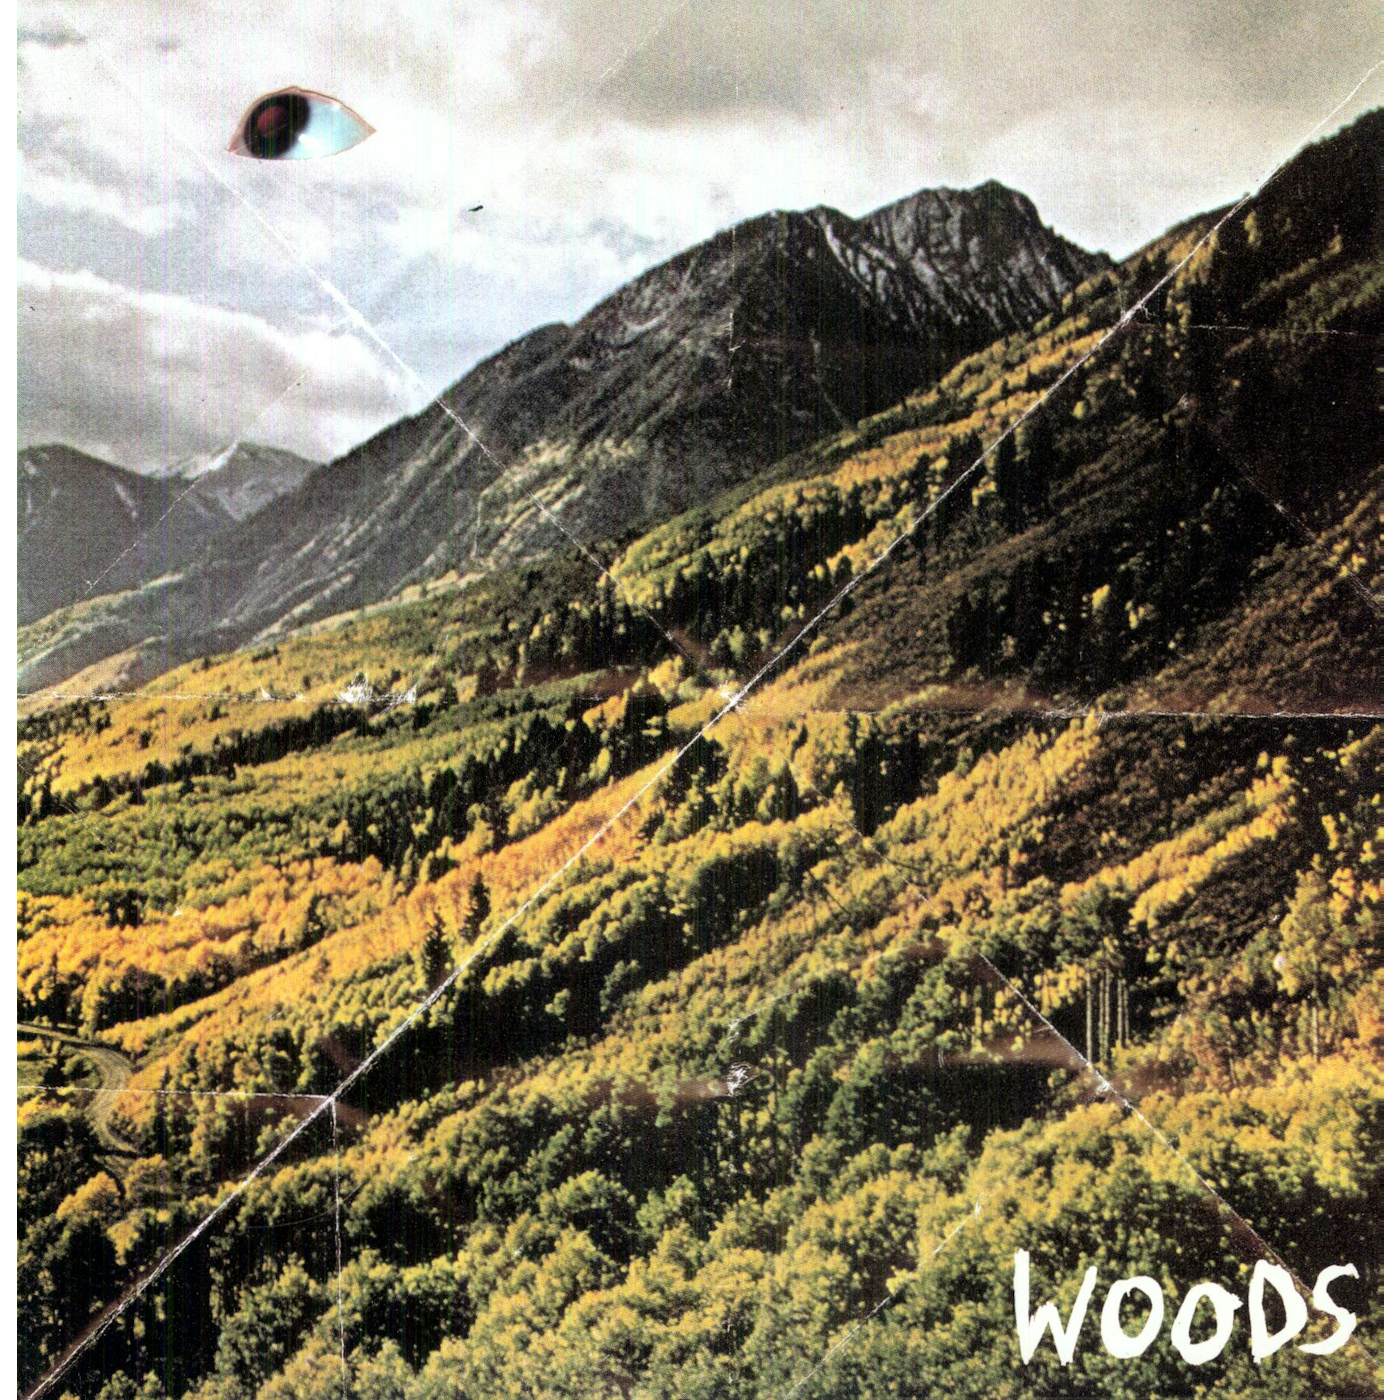 Woods Songs of Shame Vinyl Record